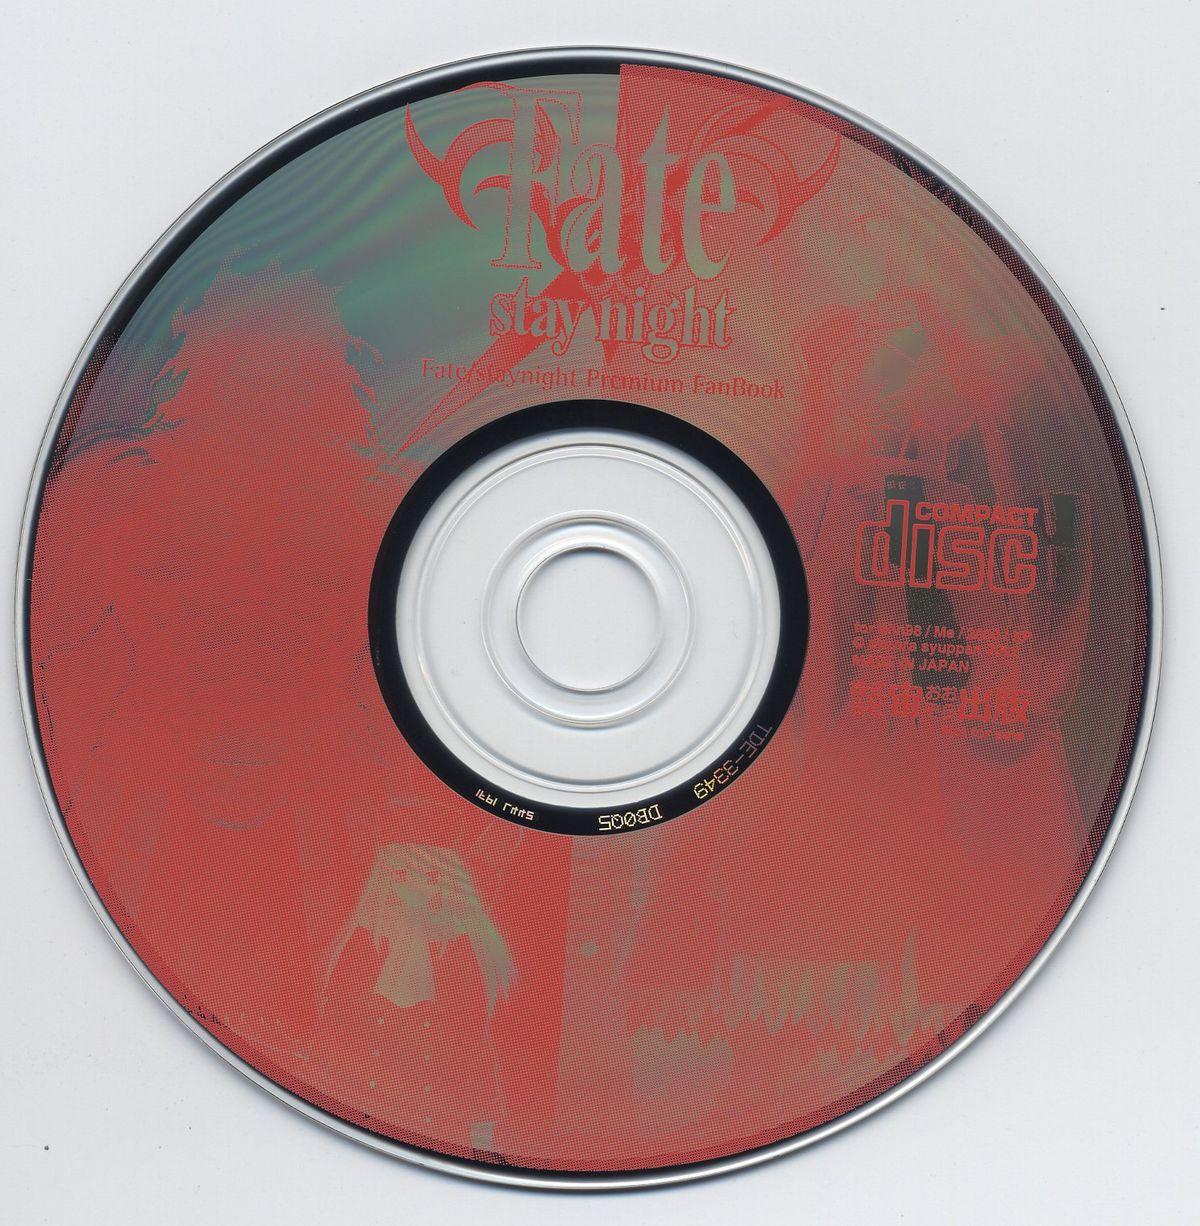 Fate/stay night Premium FanBook 91